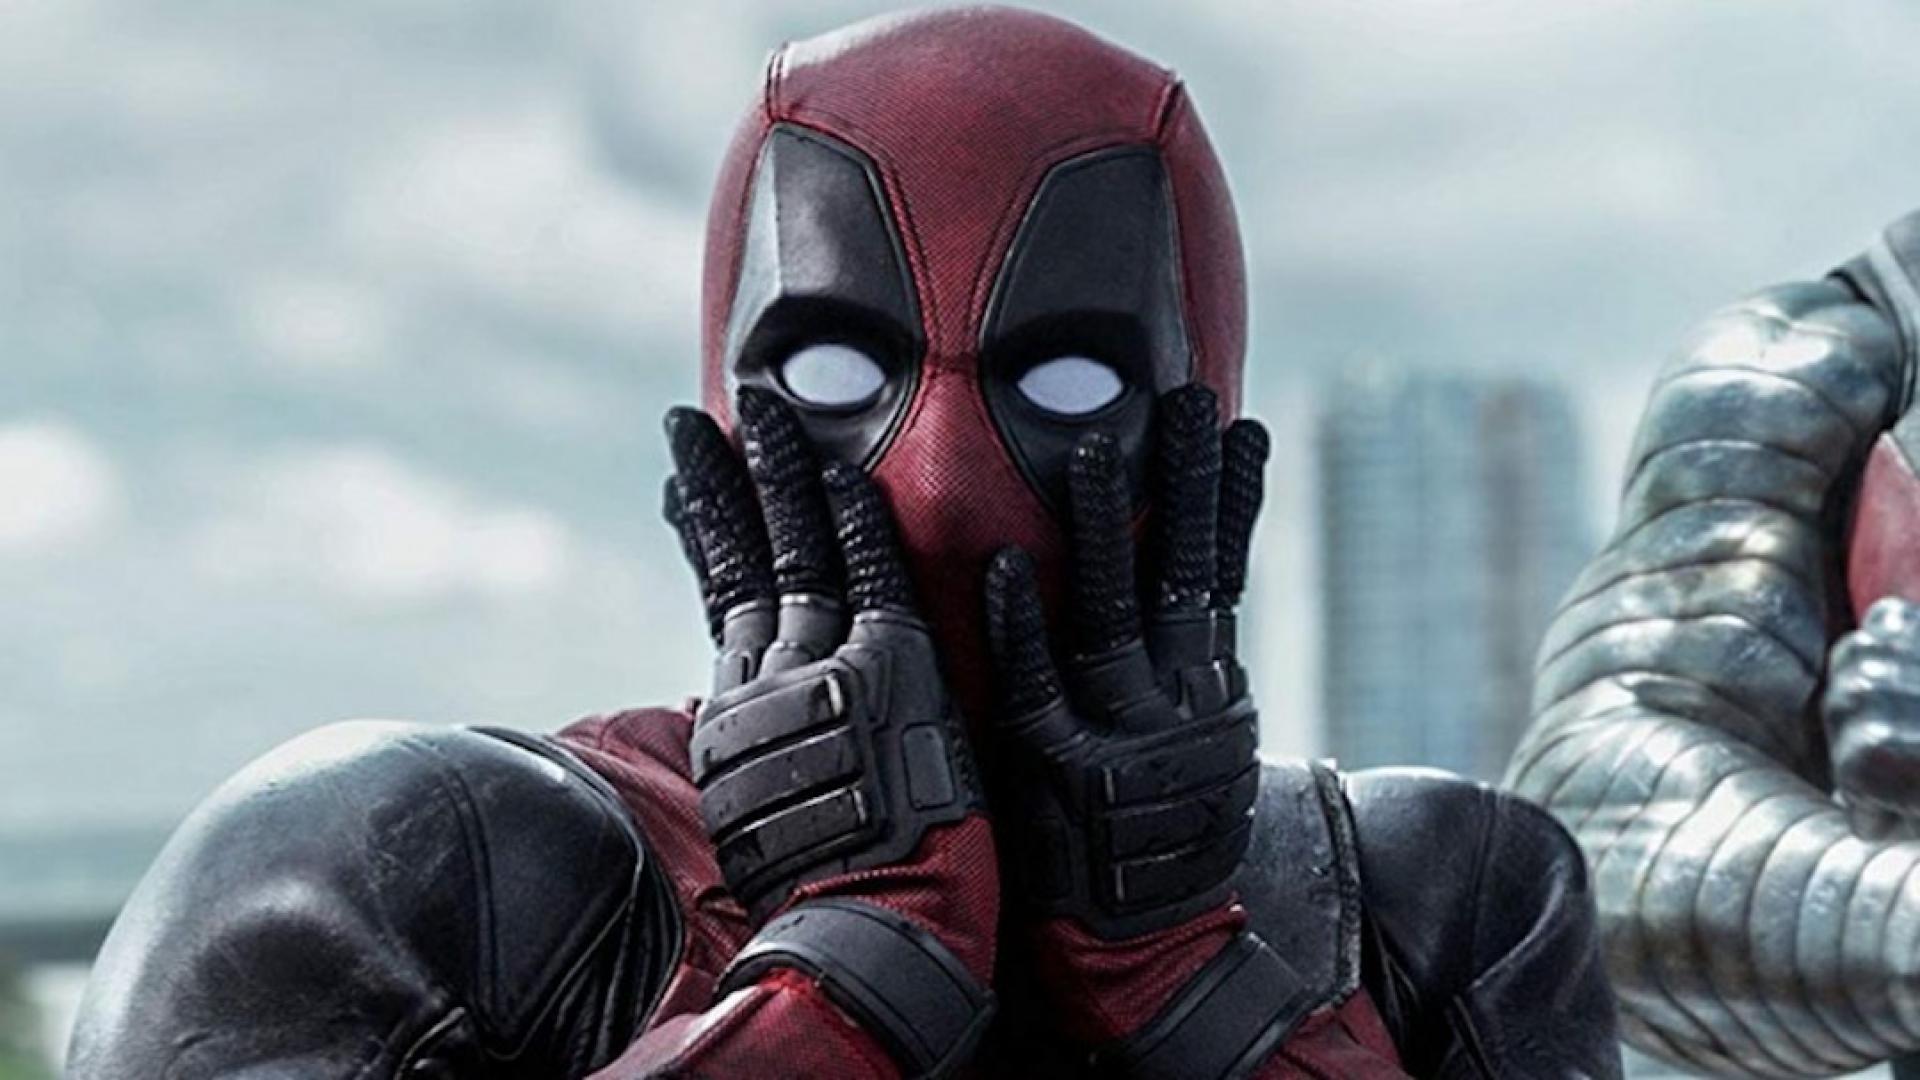 Verpletteren opening gedragen Wut!? Werk aan Deadpool 3 is al begonnen! | Veronica Superguide